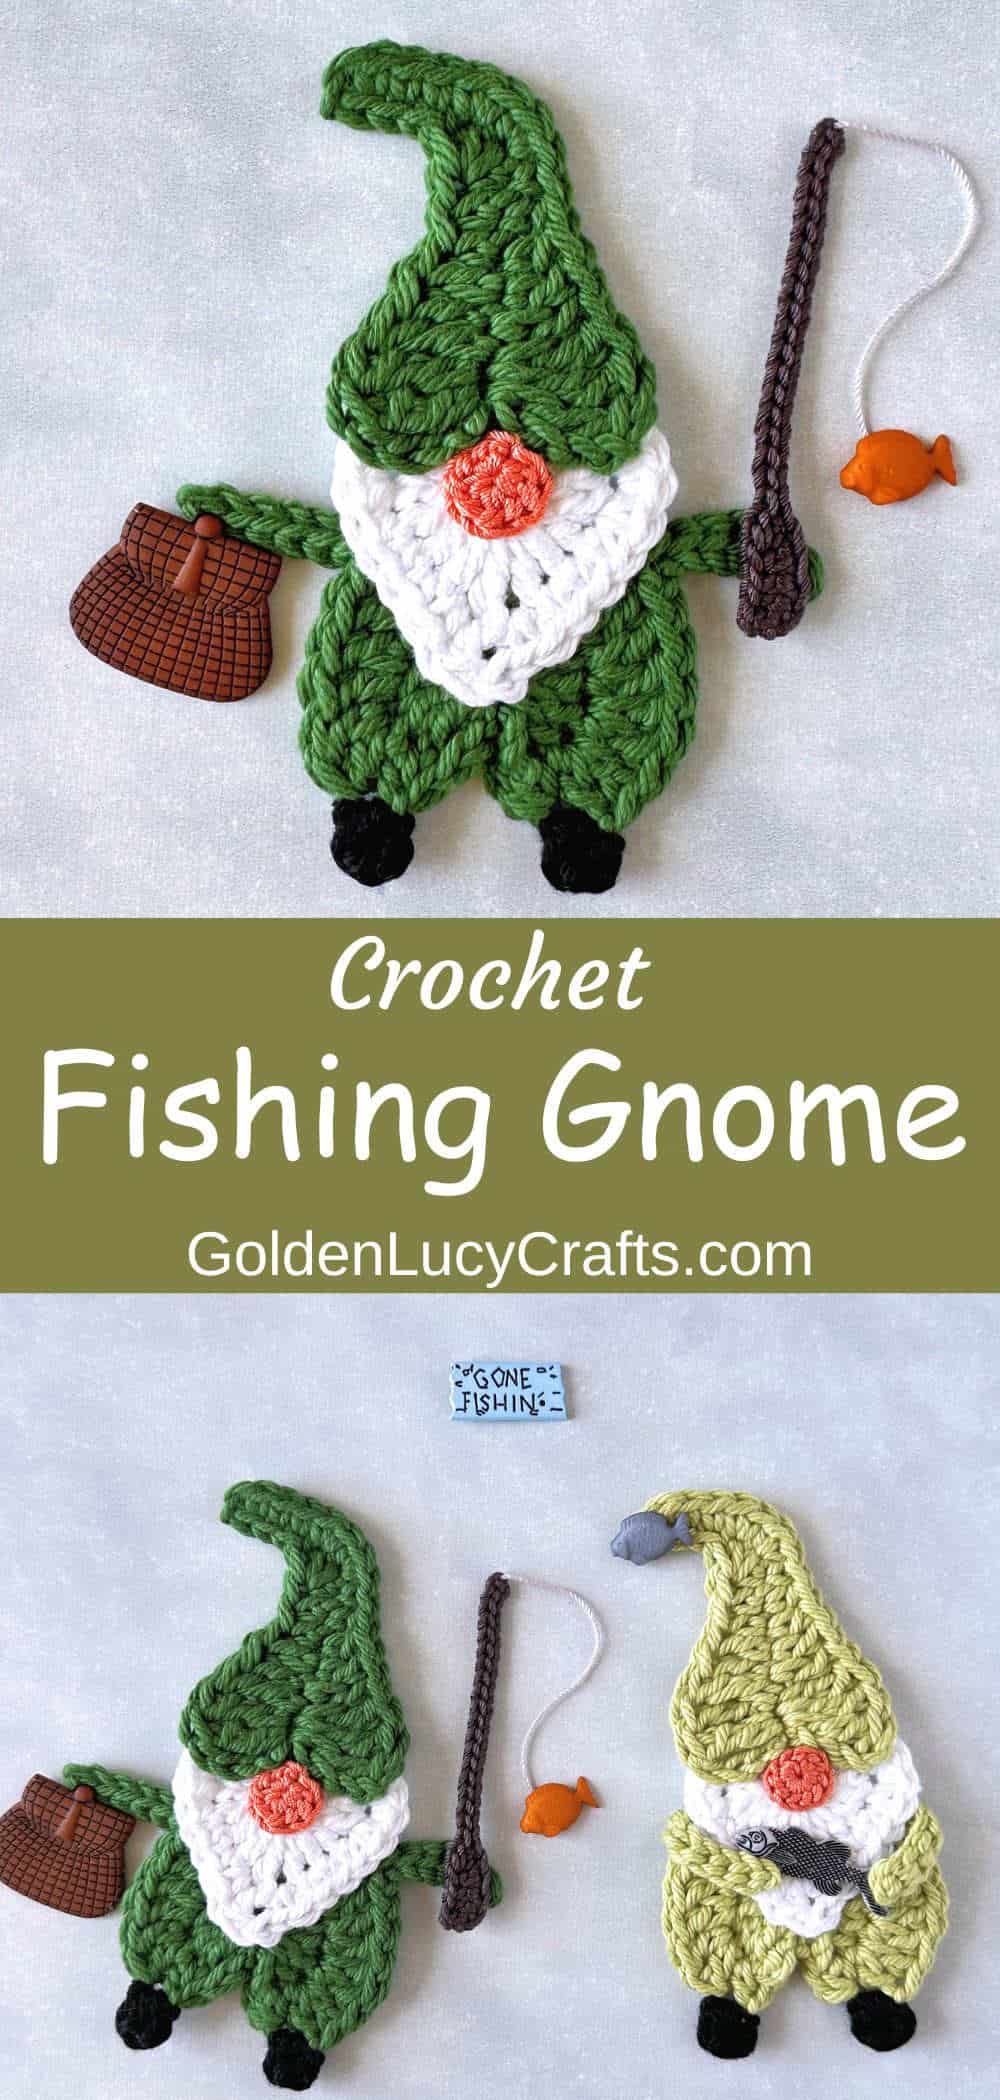 Fishing gnomes crochet appliques.